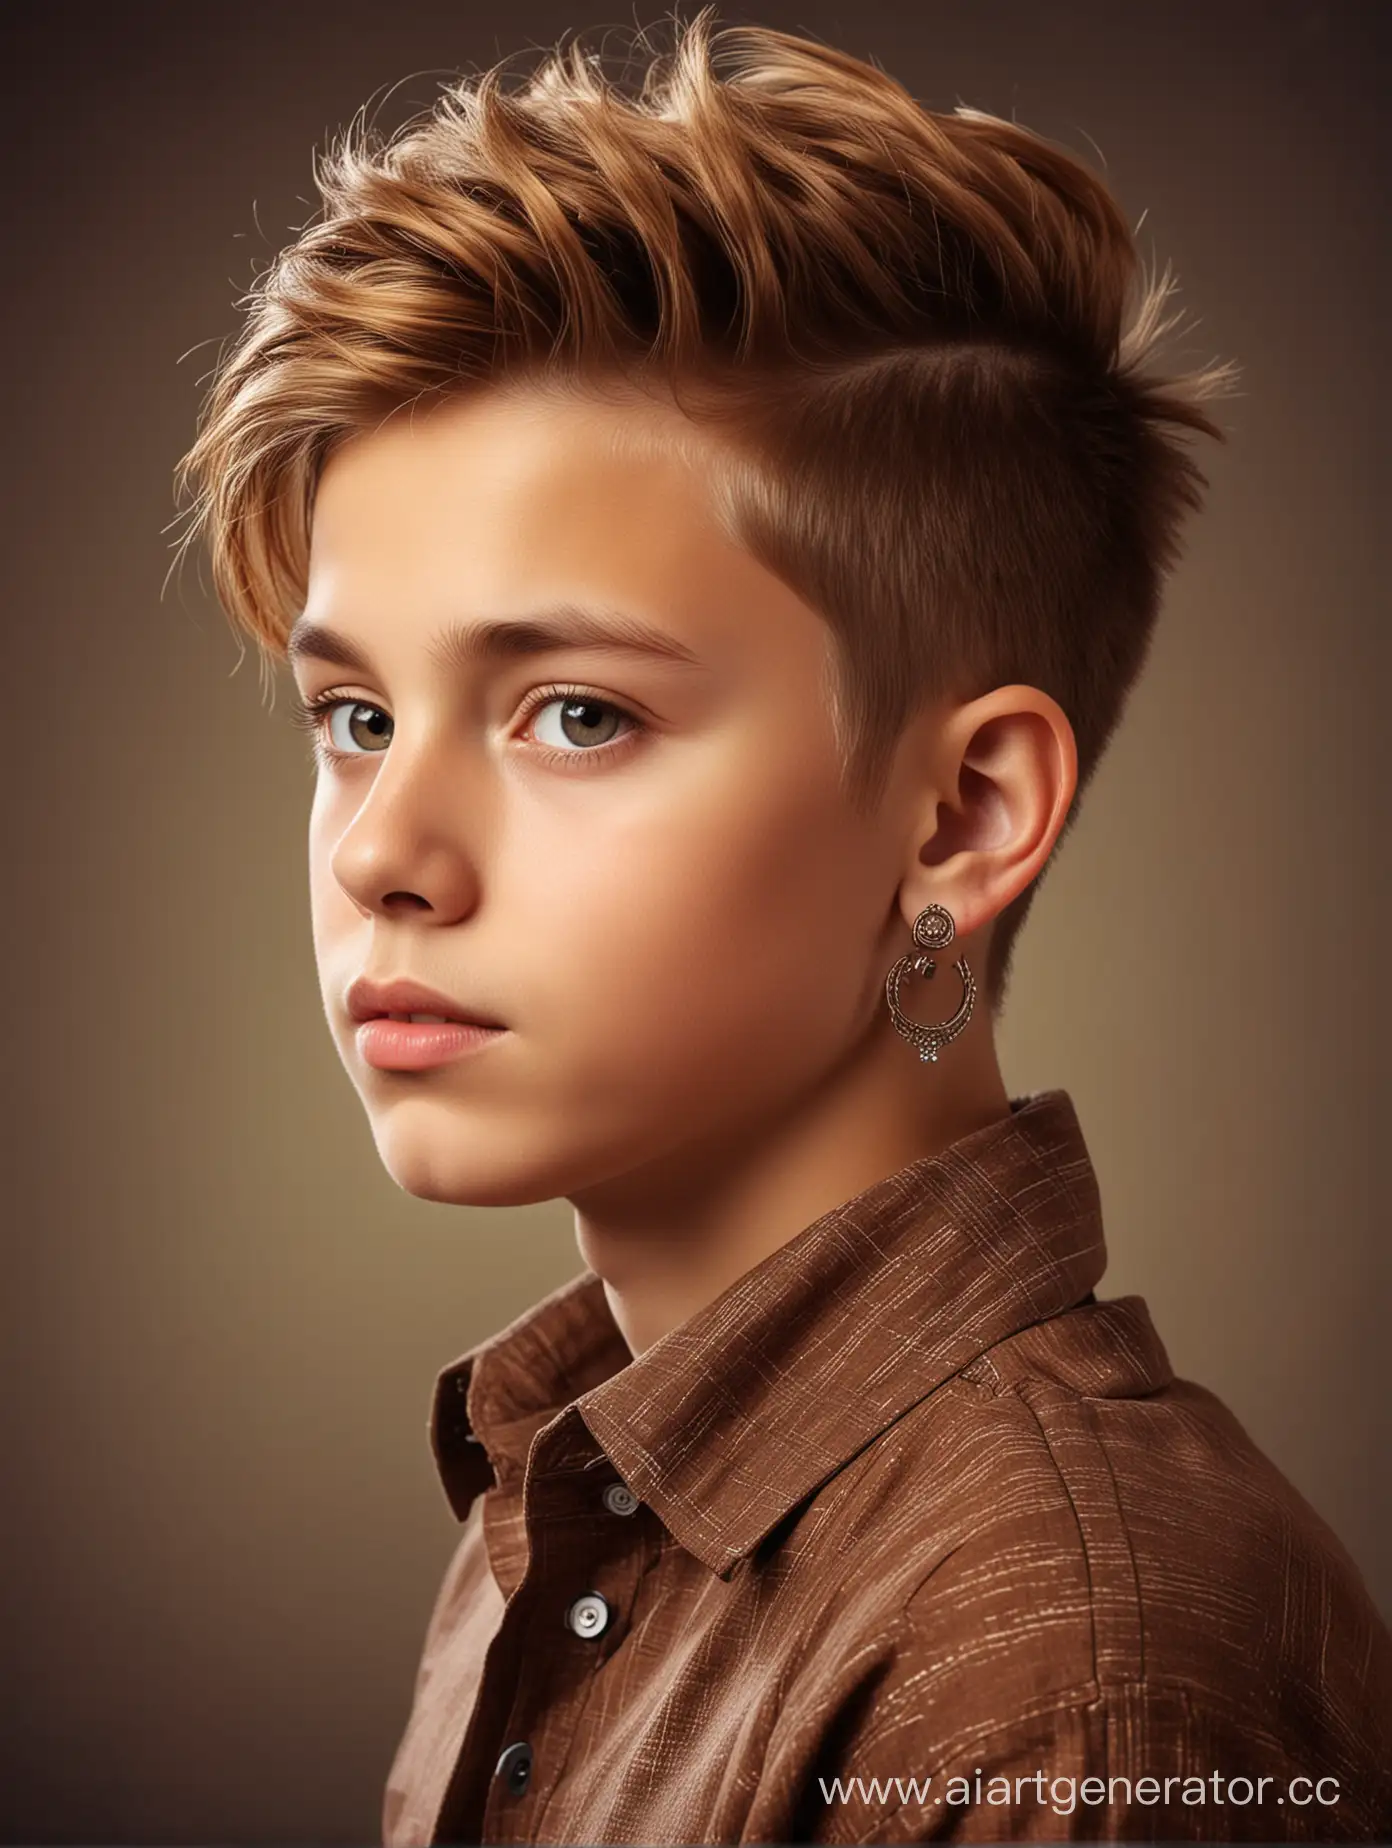 Мальчик 12 лет. Терокотовые волосы. Серни в ушах. Стильная причёска. Фото в стиле арт. 